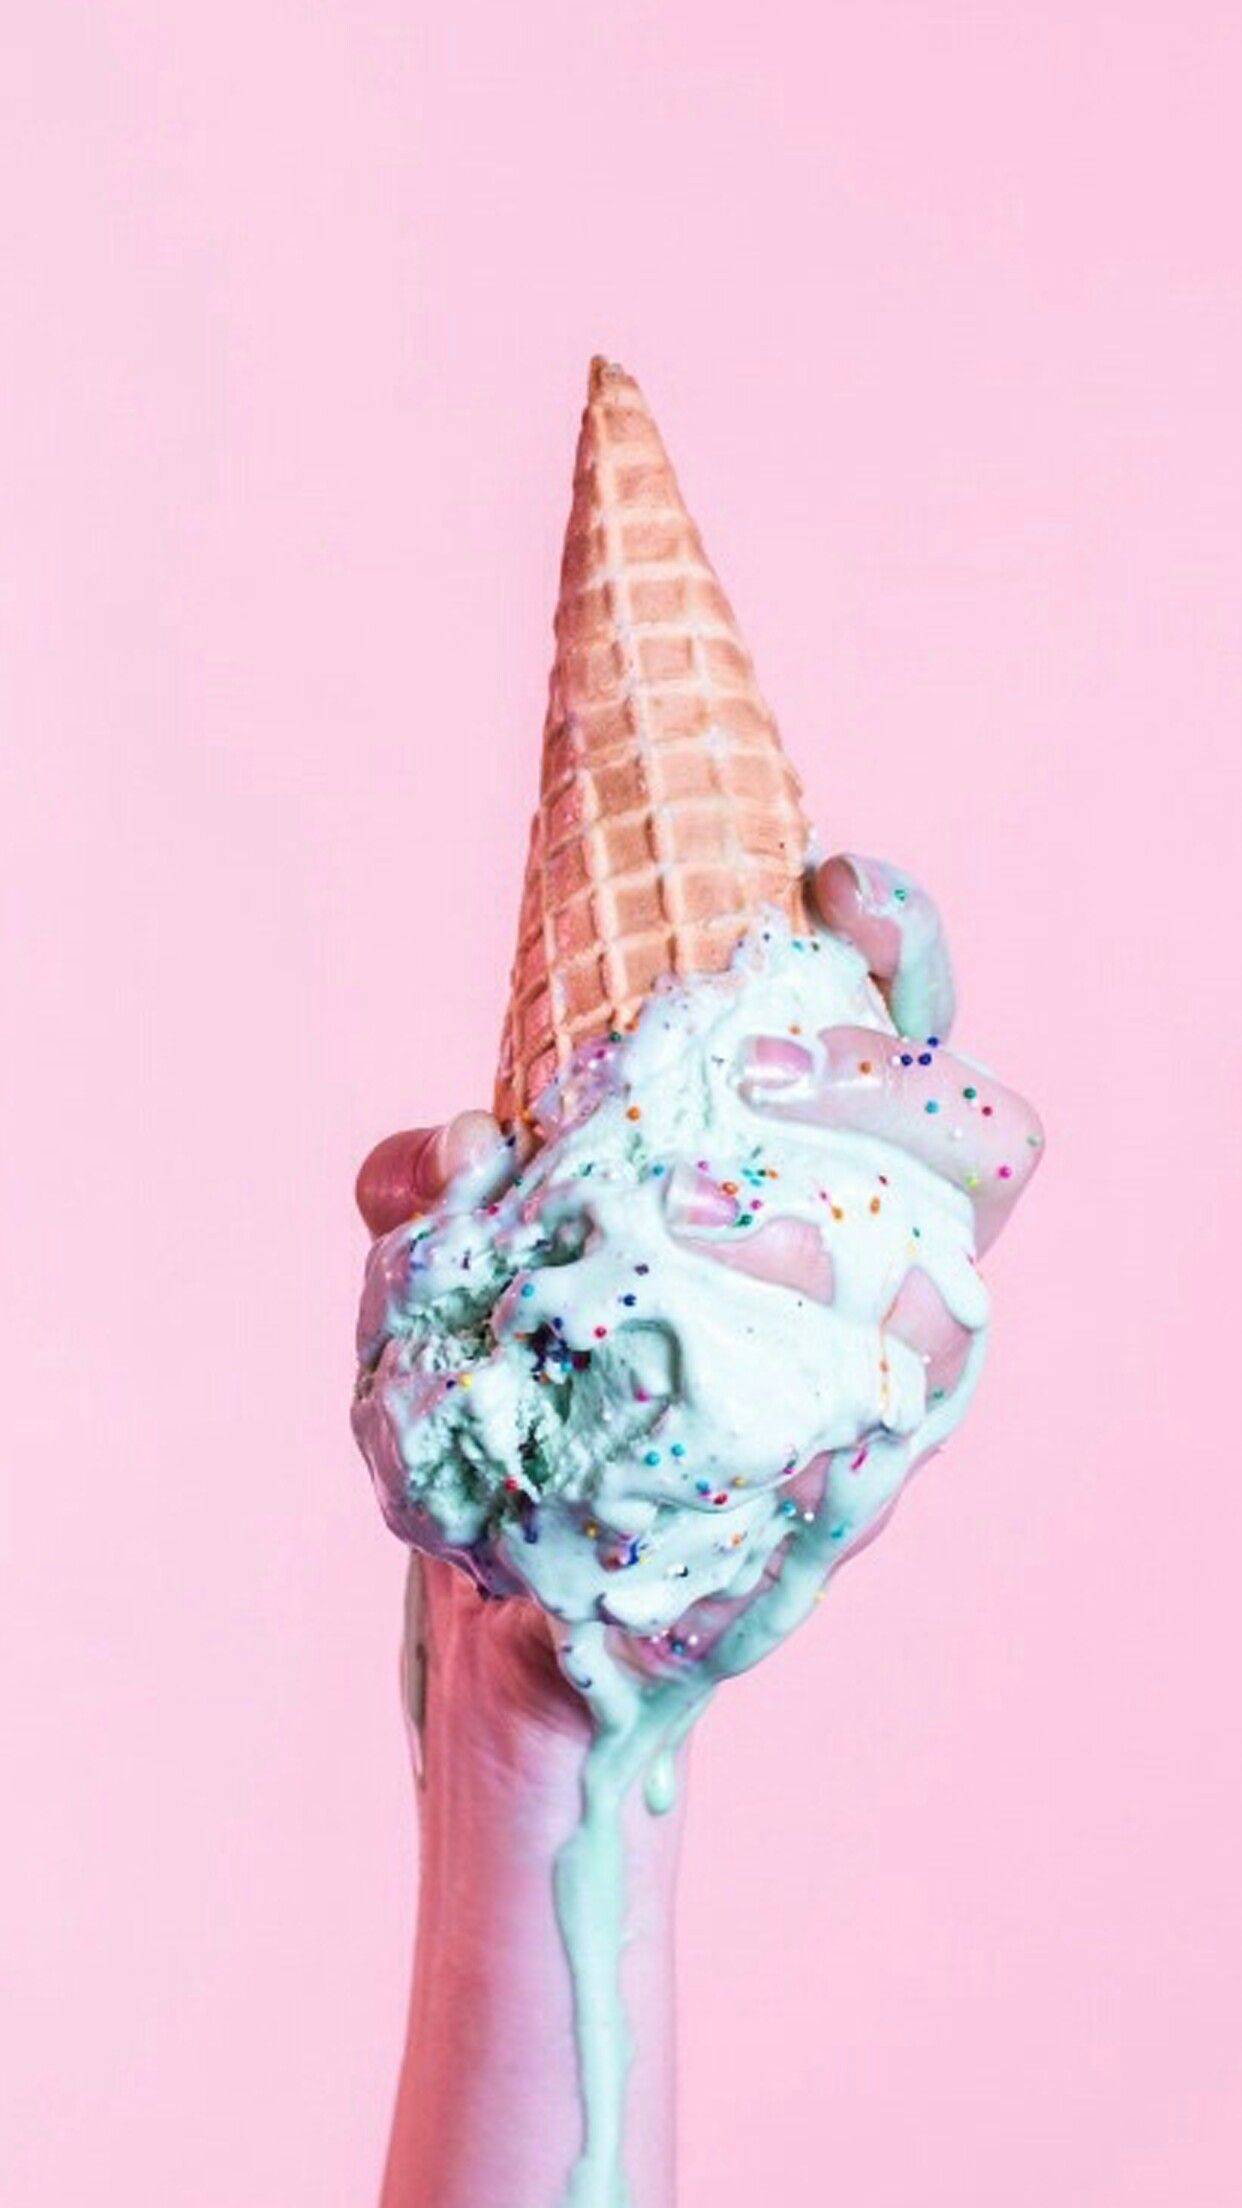 Aesthetic Ice Cream Wallpapers - Top Những Hình Ảnh Đẹp